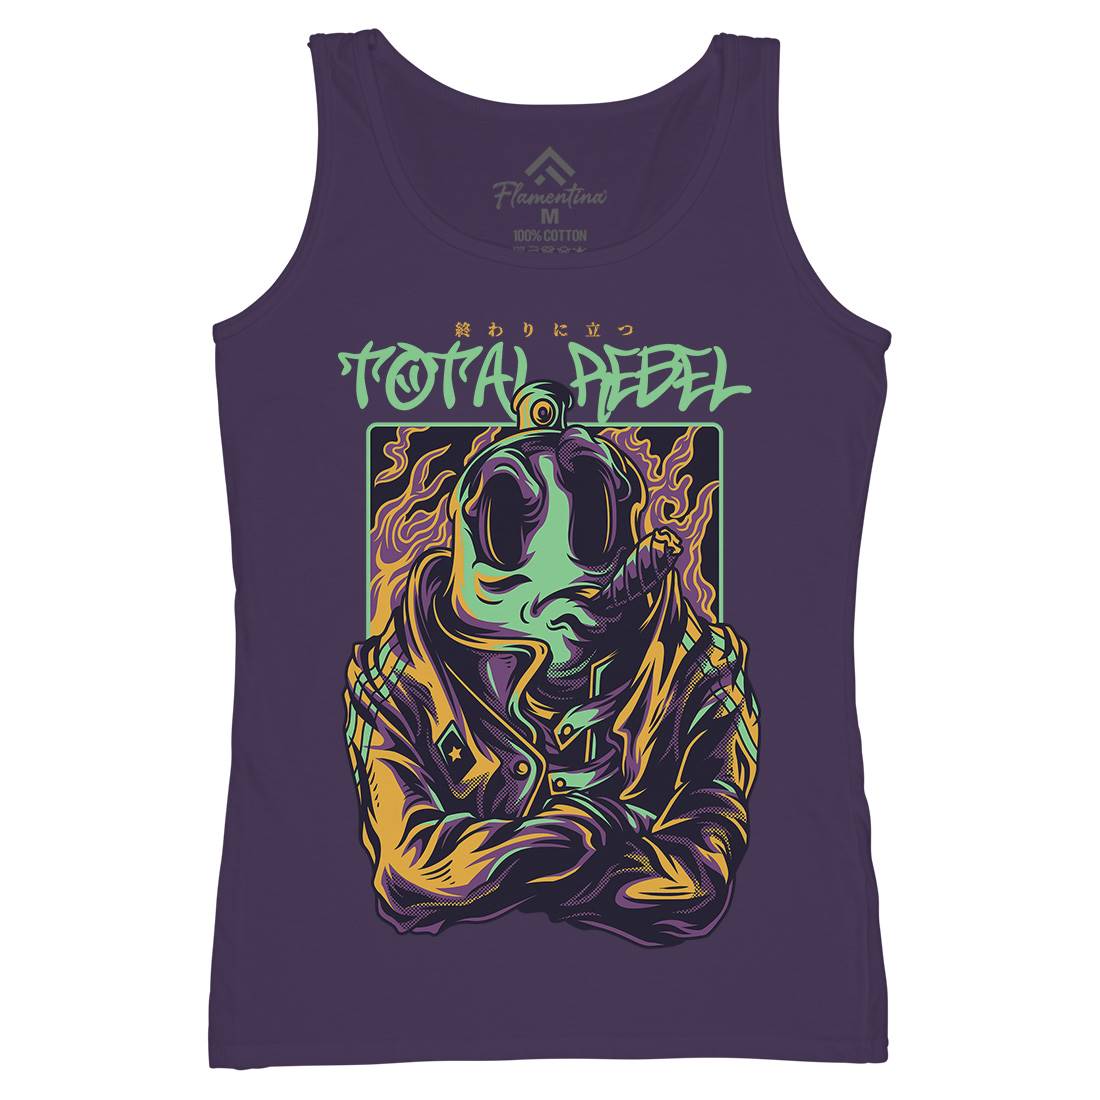 Total Rebel Womens Organic Tank Top Vest Graffiti D863